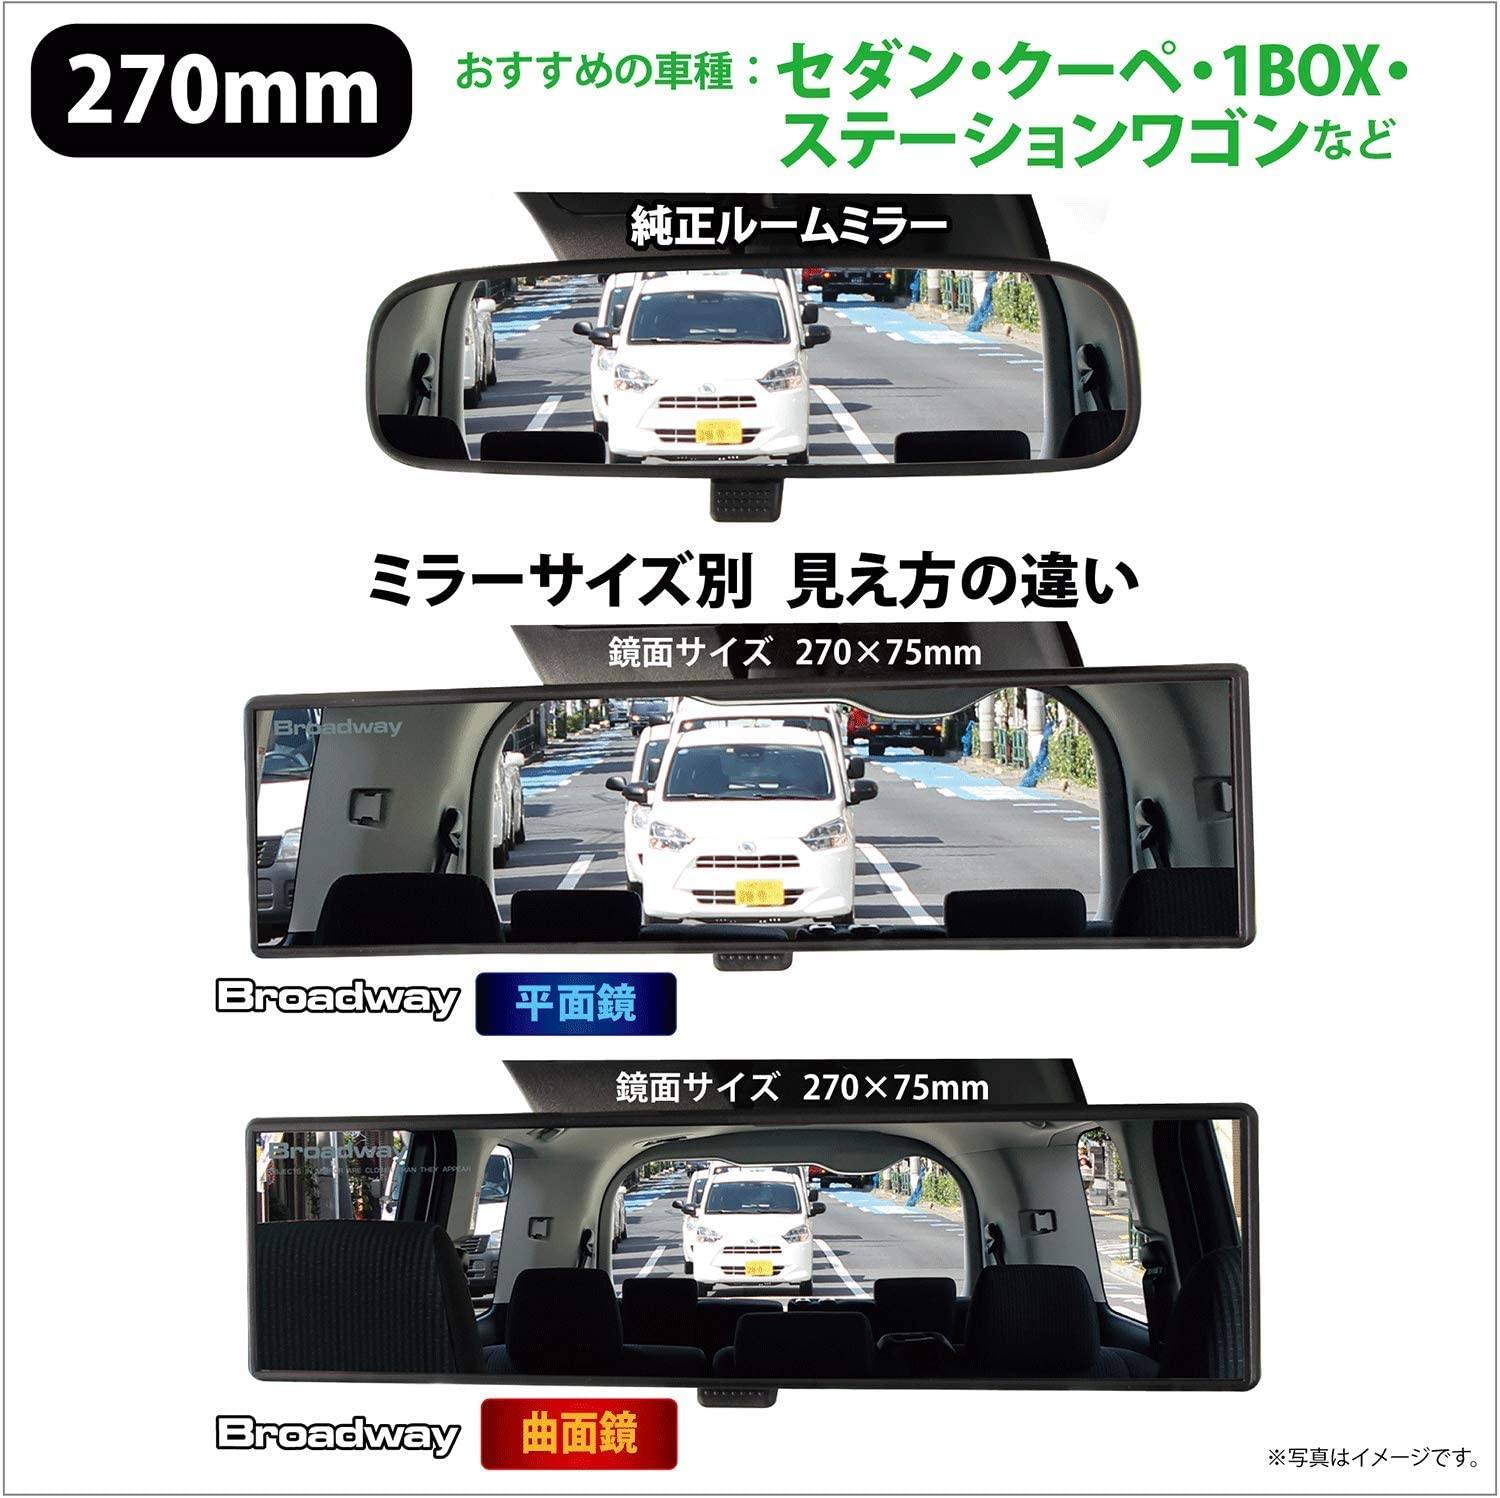 日本 NAPOLEX | BROADWAY 光反射Aluminum Plating鋁鏡倒後鏡 270mm | MOOBI 香港網上汽車用品店 p3